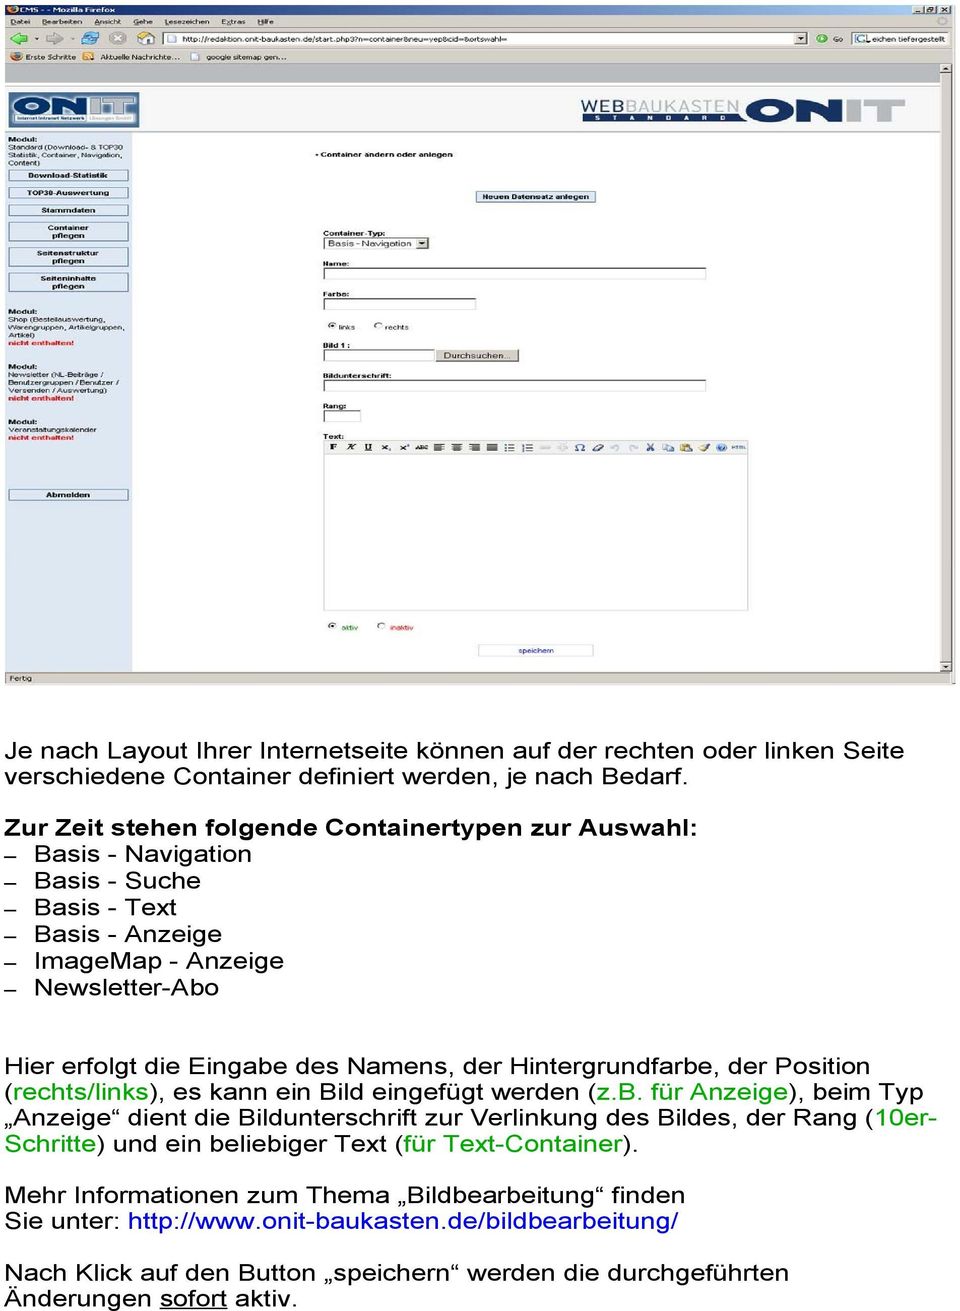 Hintergrundfarbe, der Position (rechts/links), es kann ein Bild eingefügt werden (z.b. für Anzeige), beim Typ Anzeige dient die Bildunterschrift zur Verlinkung des Bildes, der Rang (10erSchritte) und ein beliebiger Text (für Text-Container).